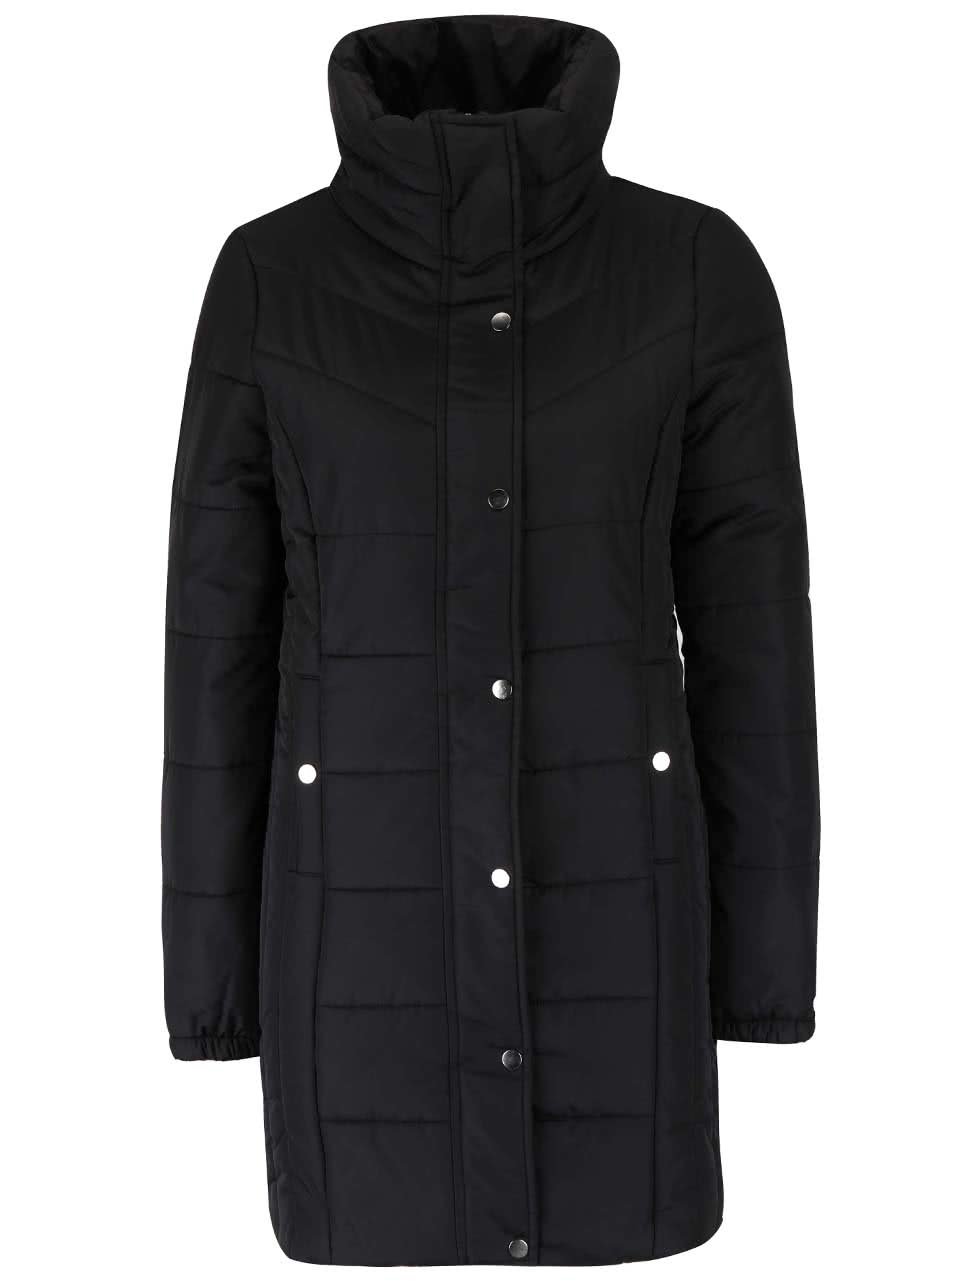 Černý dlouhý prošívaný kabát s vysokým límcem Vero Moda Papette